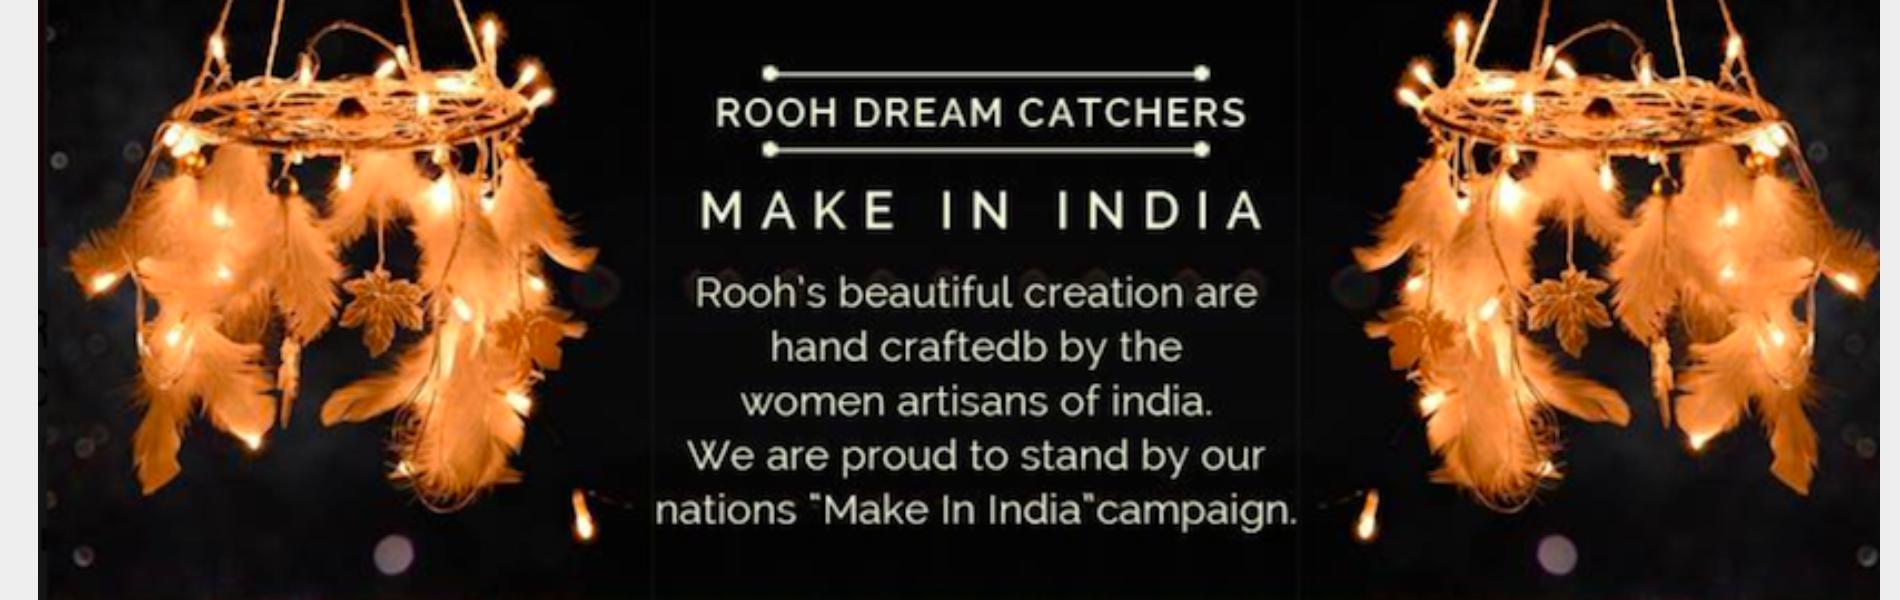 Rooh Dream Catchers